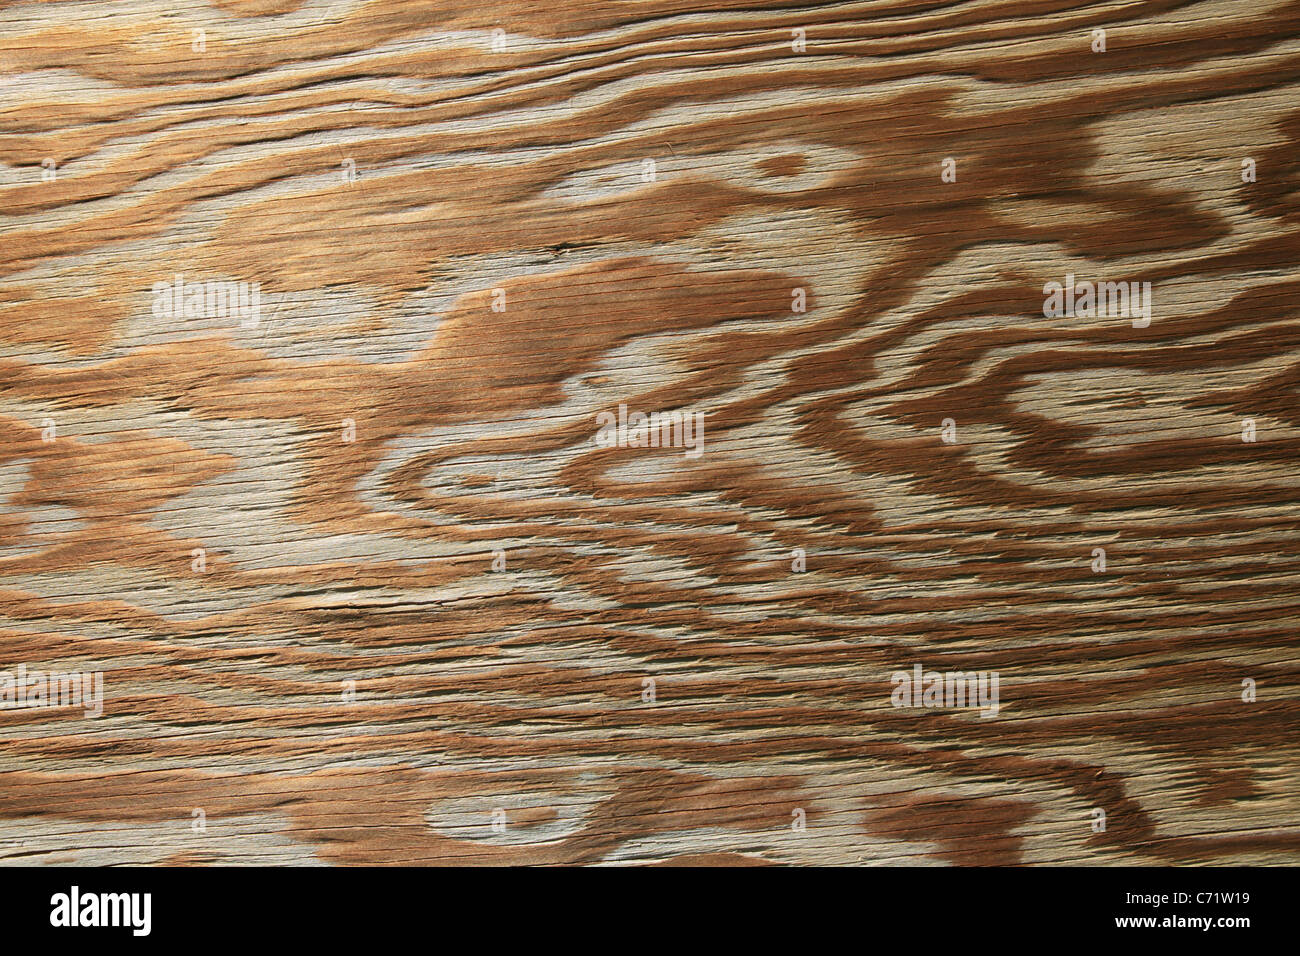 Horizontal getragen von alten Sperrholz Hintergrund mit gemaserte Textur Stockfoto